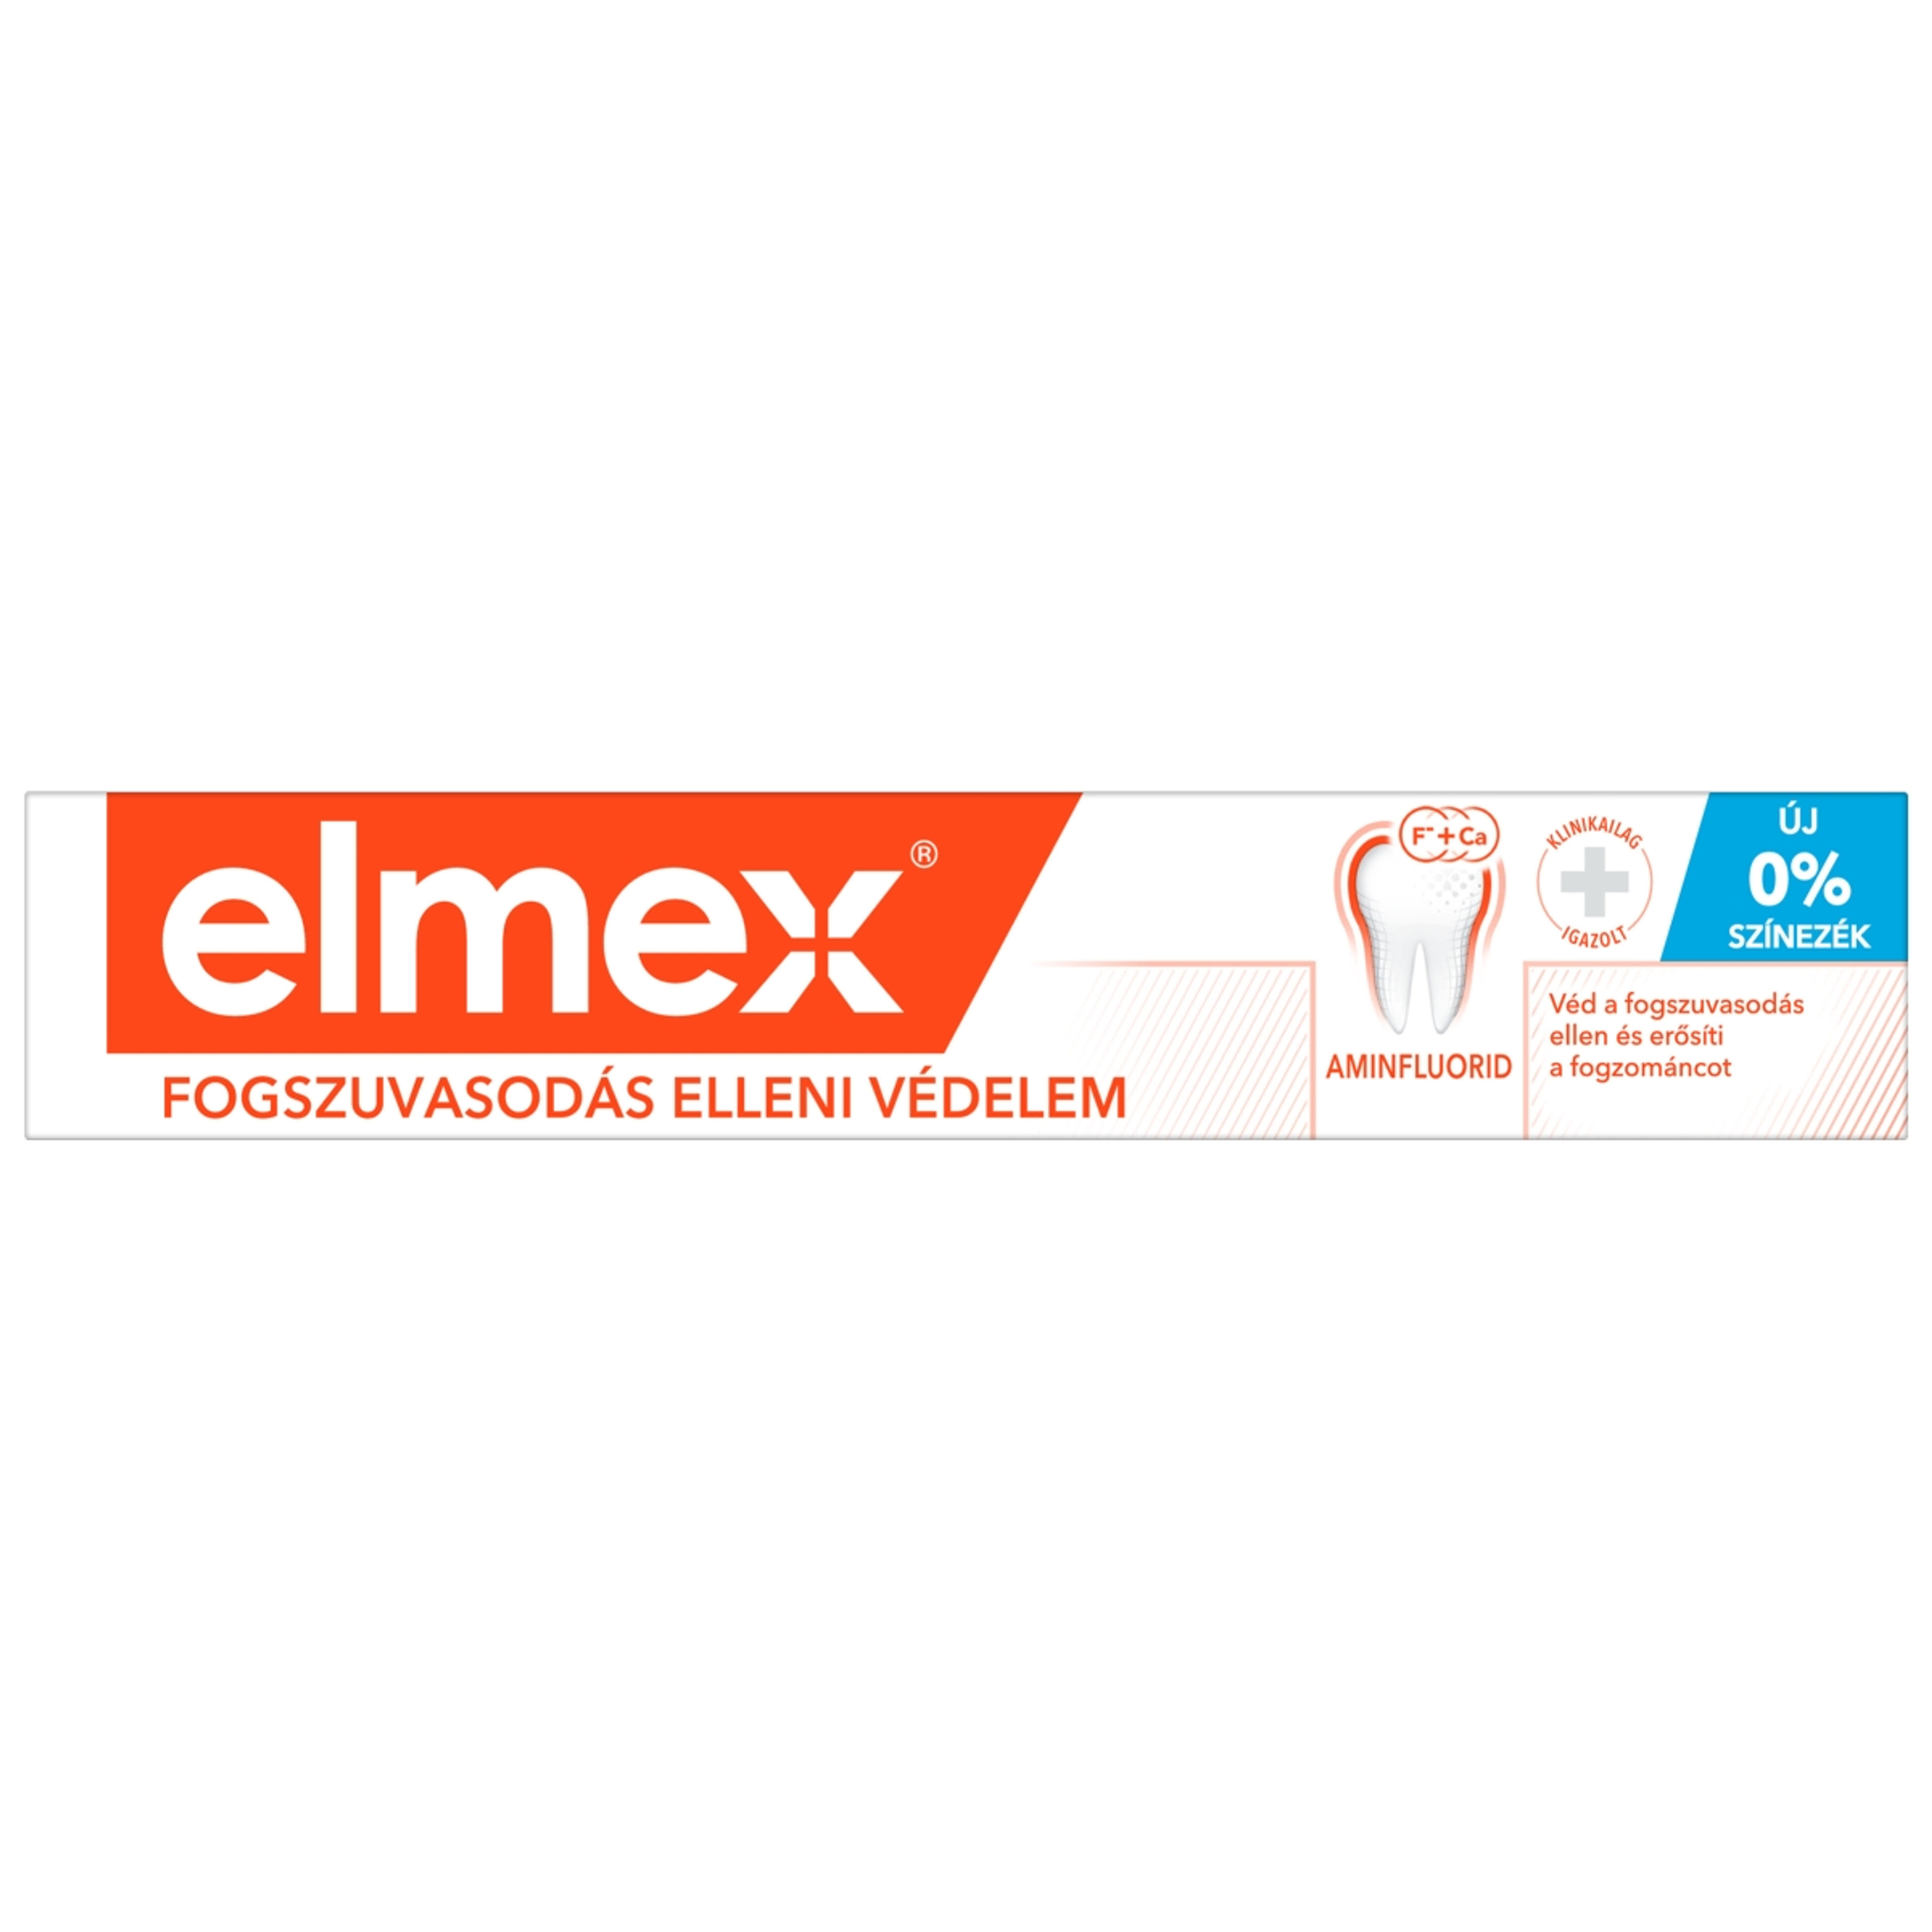 Elmex Caries Protection fogszuvasodás elleni fogkrém aminfluoriddal - 75 ml